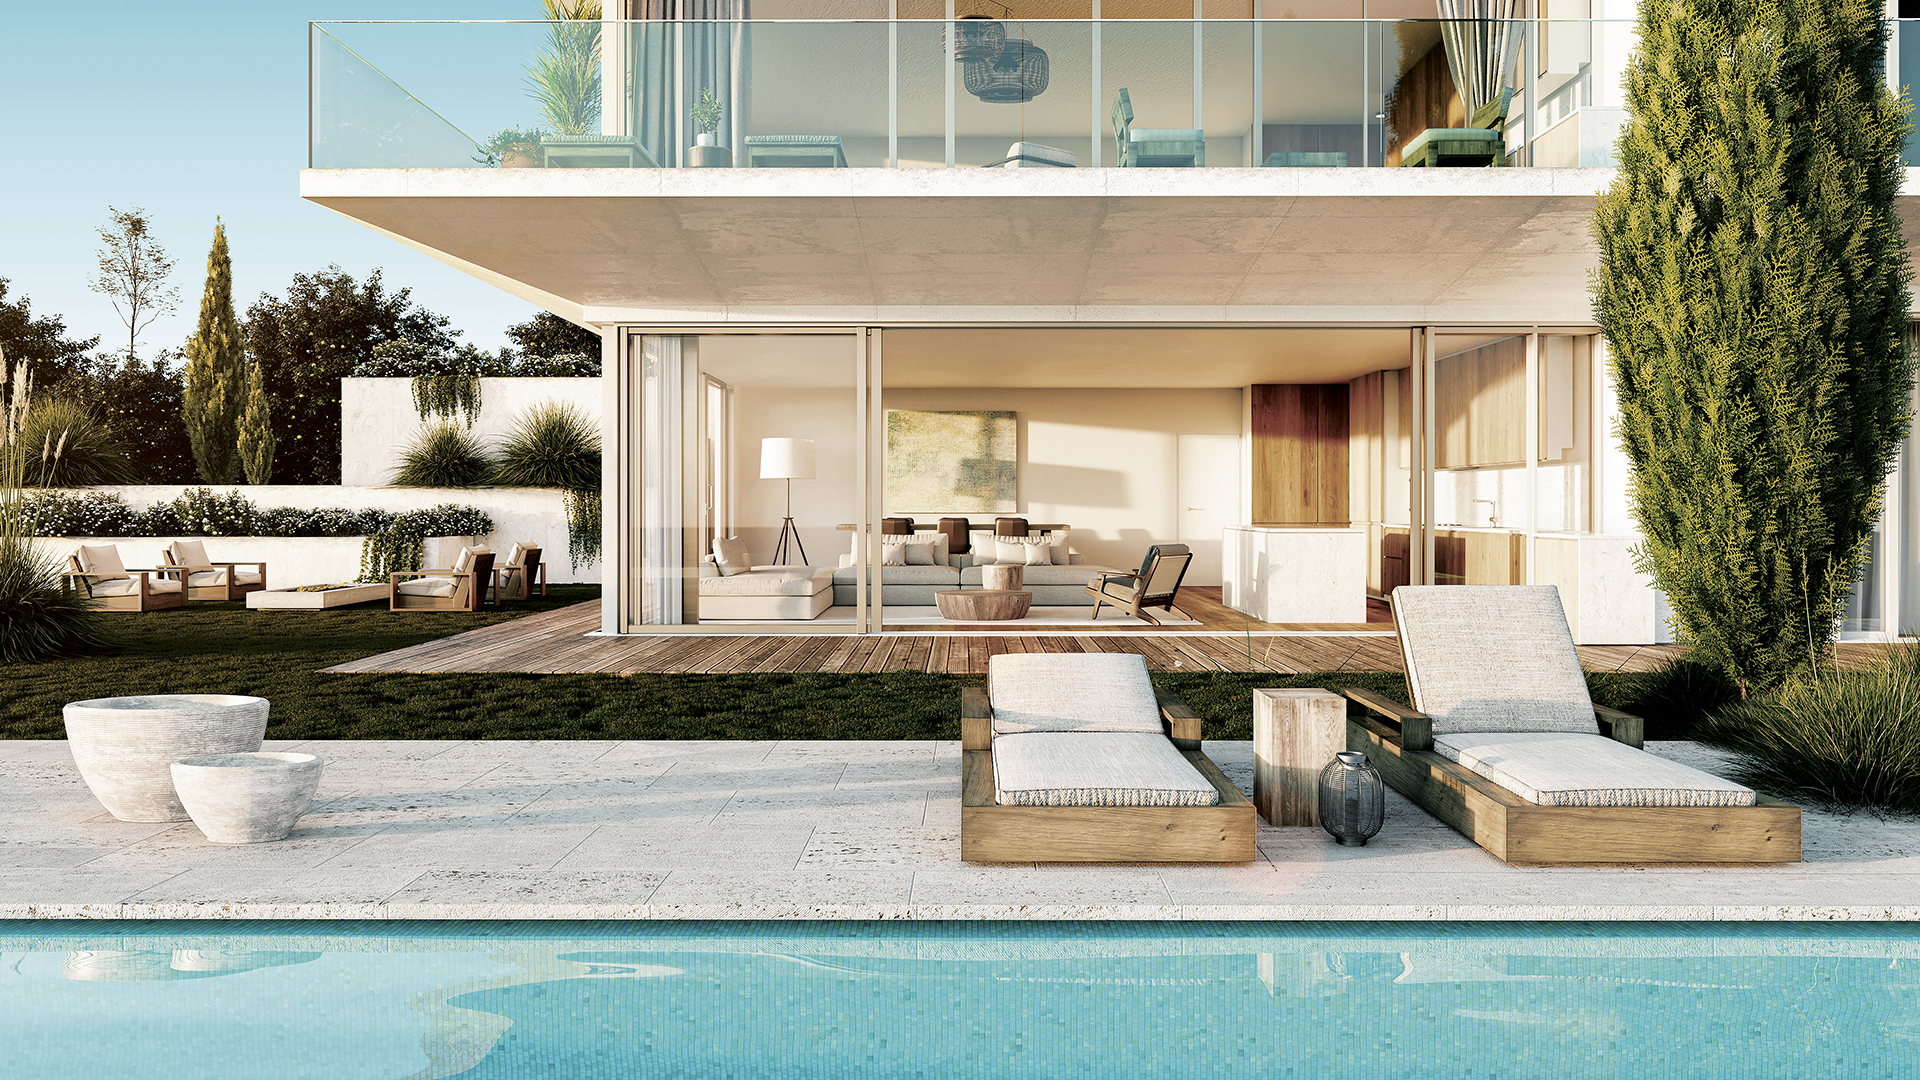 EM CONSTRUÇÃO - Apartamentos T2 com terraço, piscina comum e vista mar Carvoeiro | LG2101 Em construção, espaçosos apartamentos T2 com terraço ou jardim perto de comodidades nos arredores de Carvoeiro. 